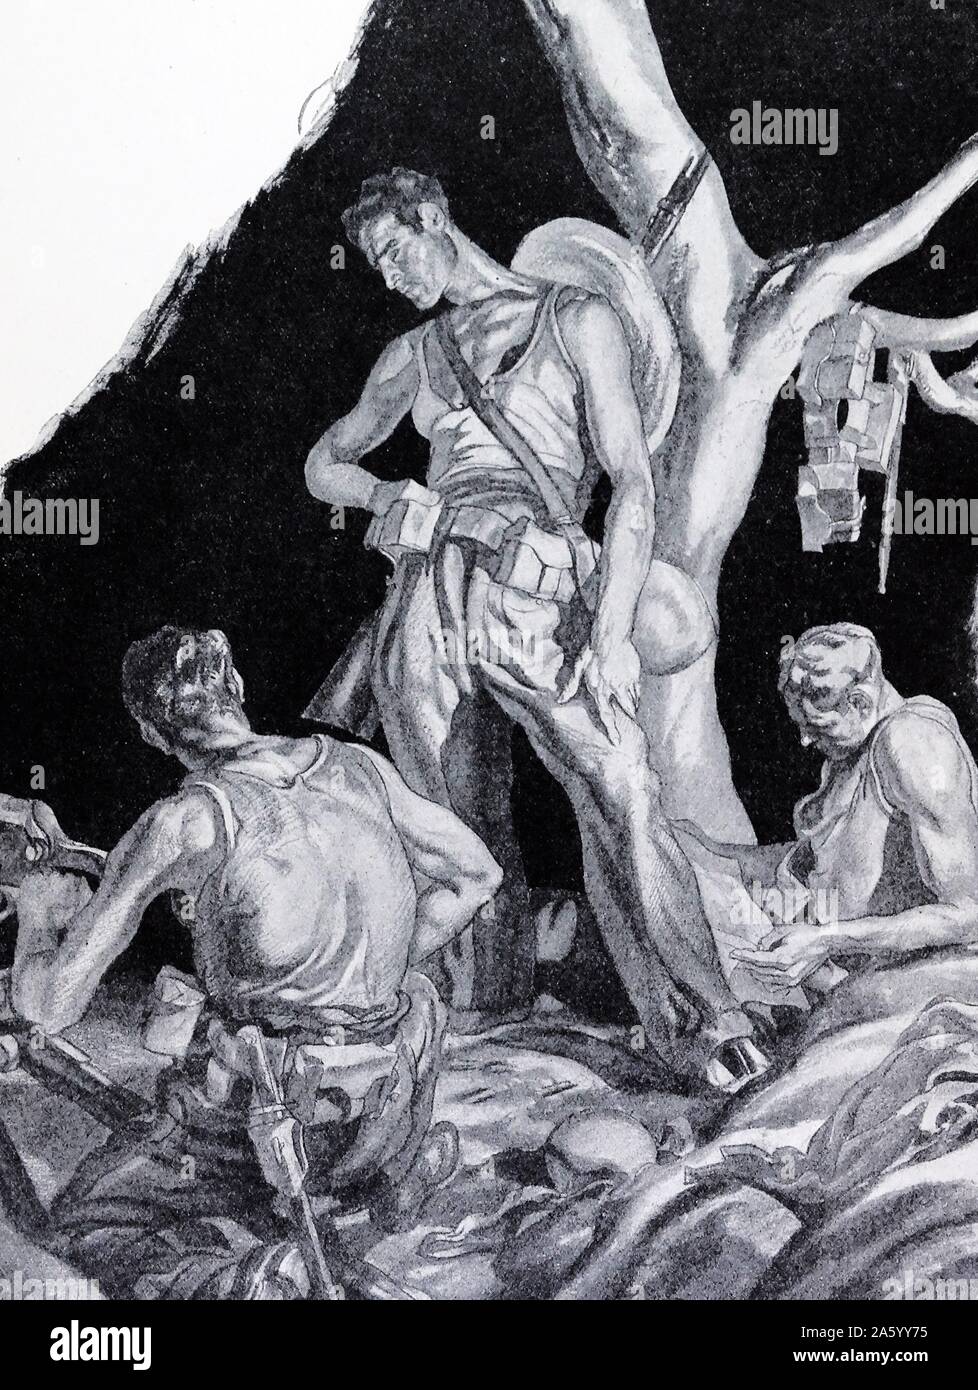 Kommunistischen syndikalistischen Miliz in der Nacht, während des spanischen Bürgerkriegs. Durch Carlos Saenz de Tejada (1897-1958), spanischer Maler und Illustrator; identifiziert mit der nationalistischen (faschistischen) Seite im spanischen Bürgerkrieg. Stockfoto